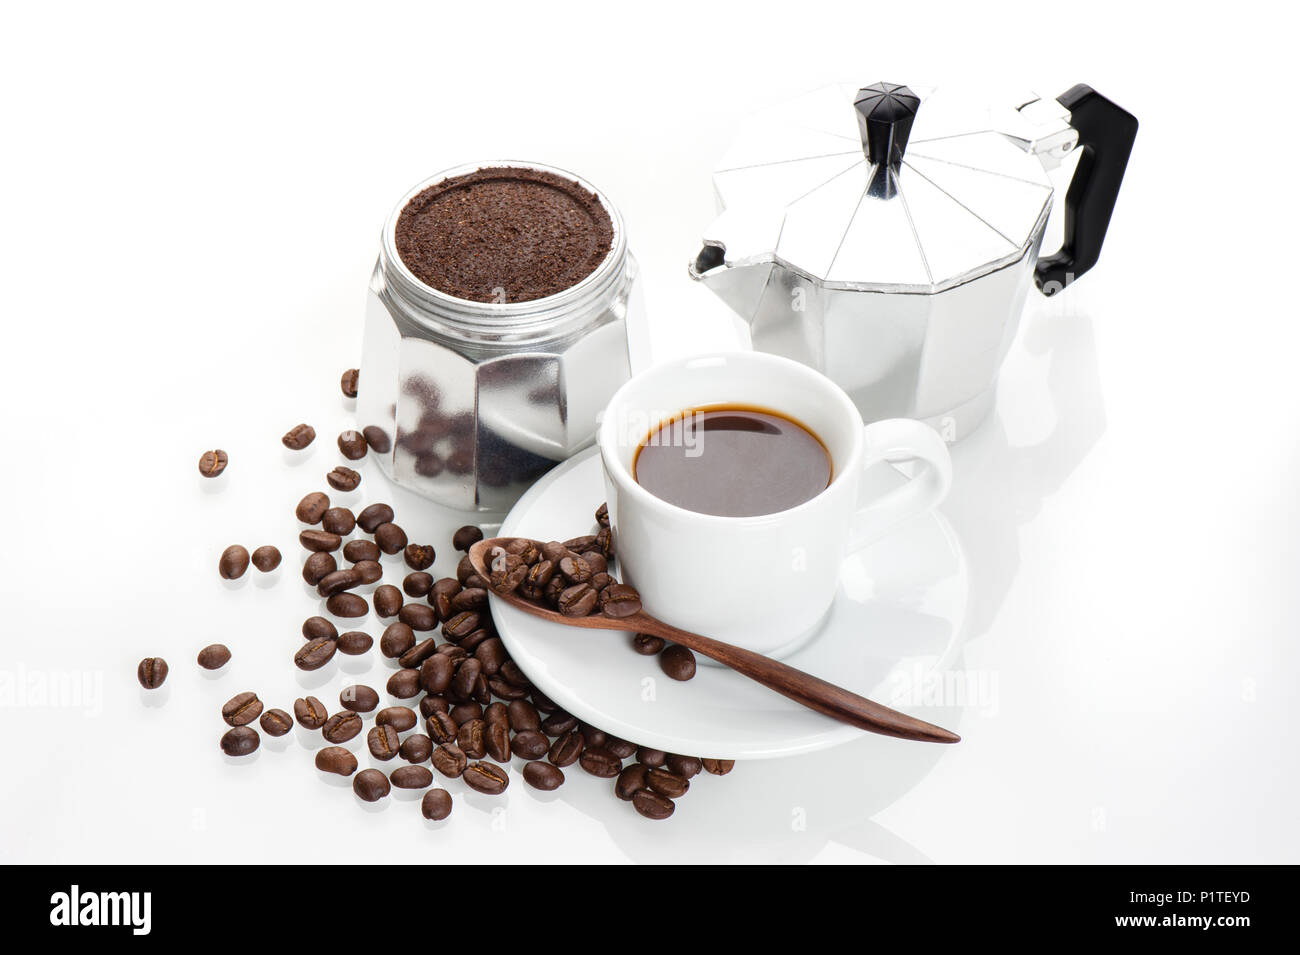 Les amoureux de café, café et équipements concept Banque D'Images